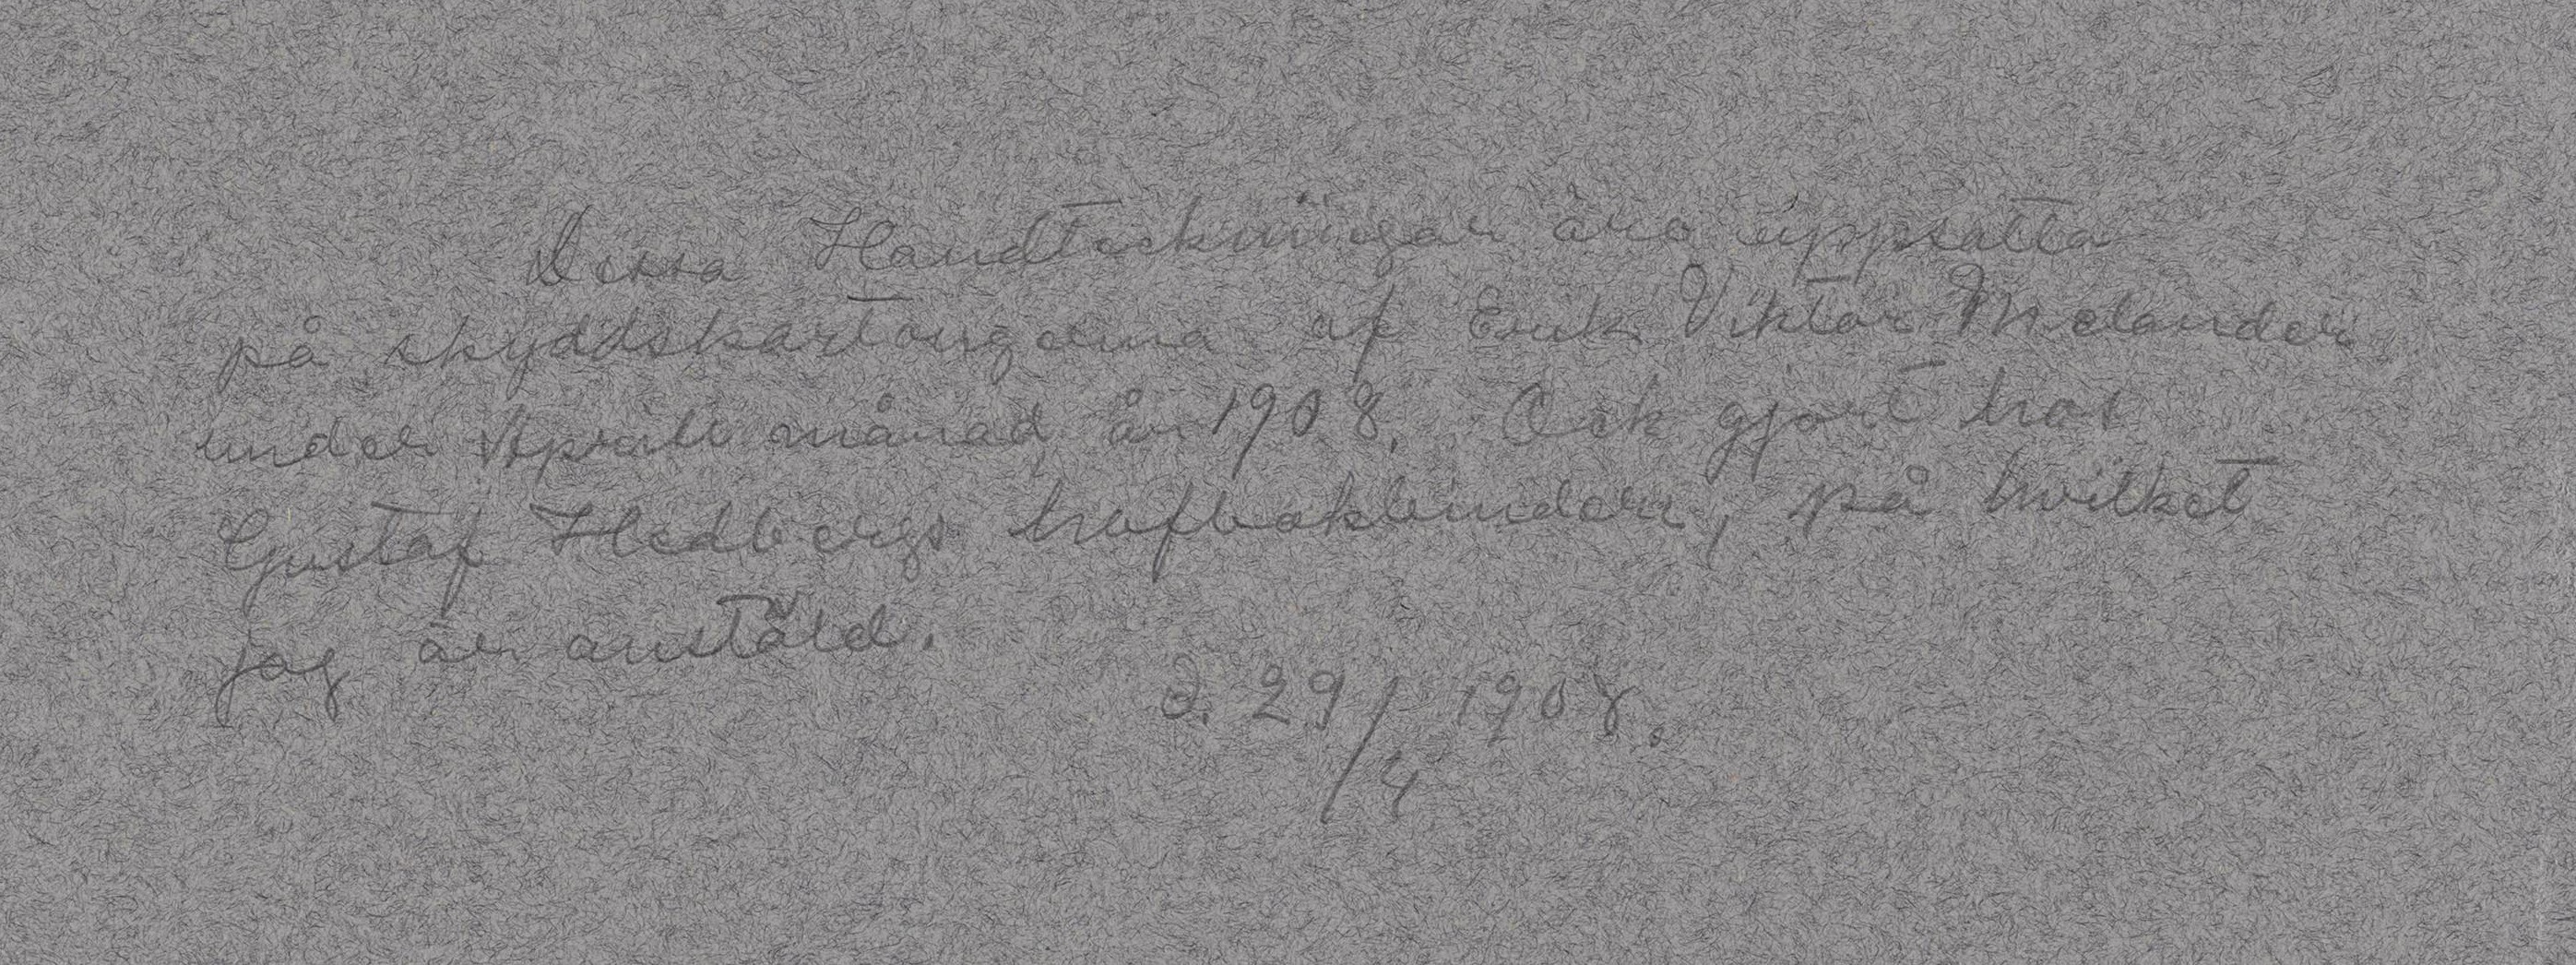 Handskriven text i blyerts på ett blågrått papper.